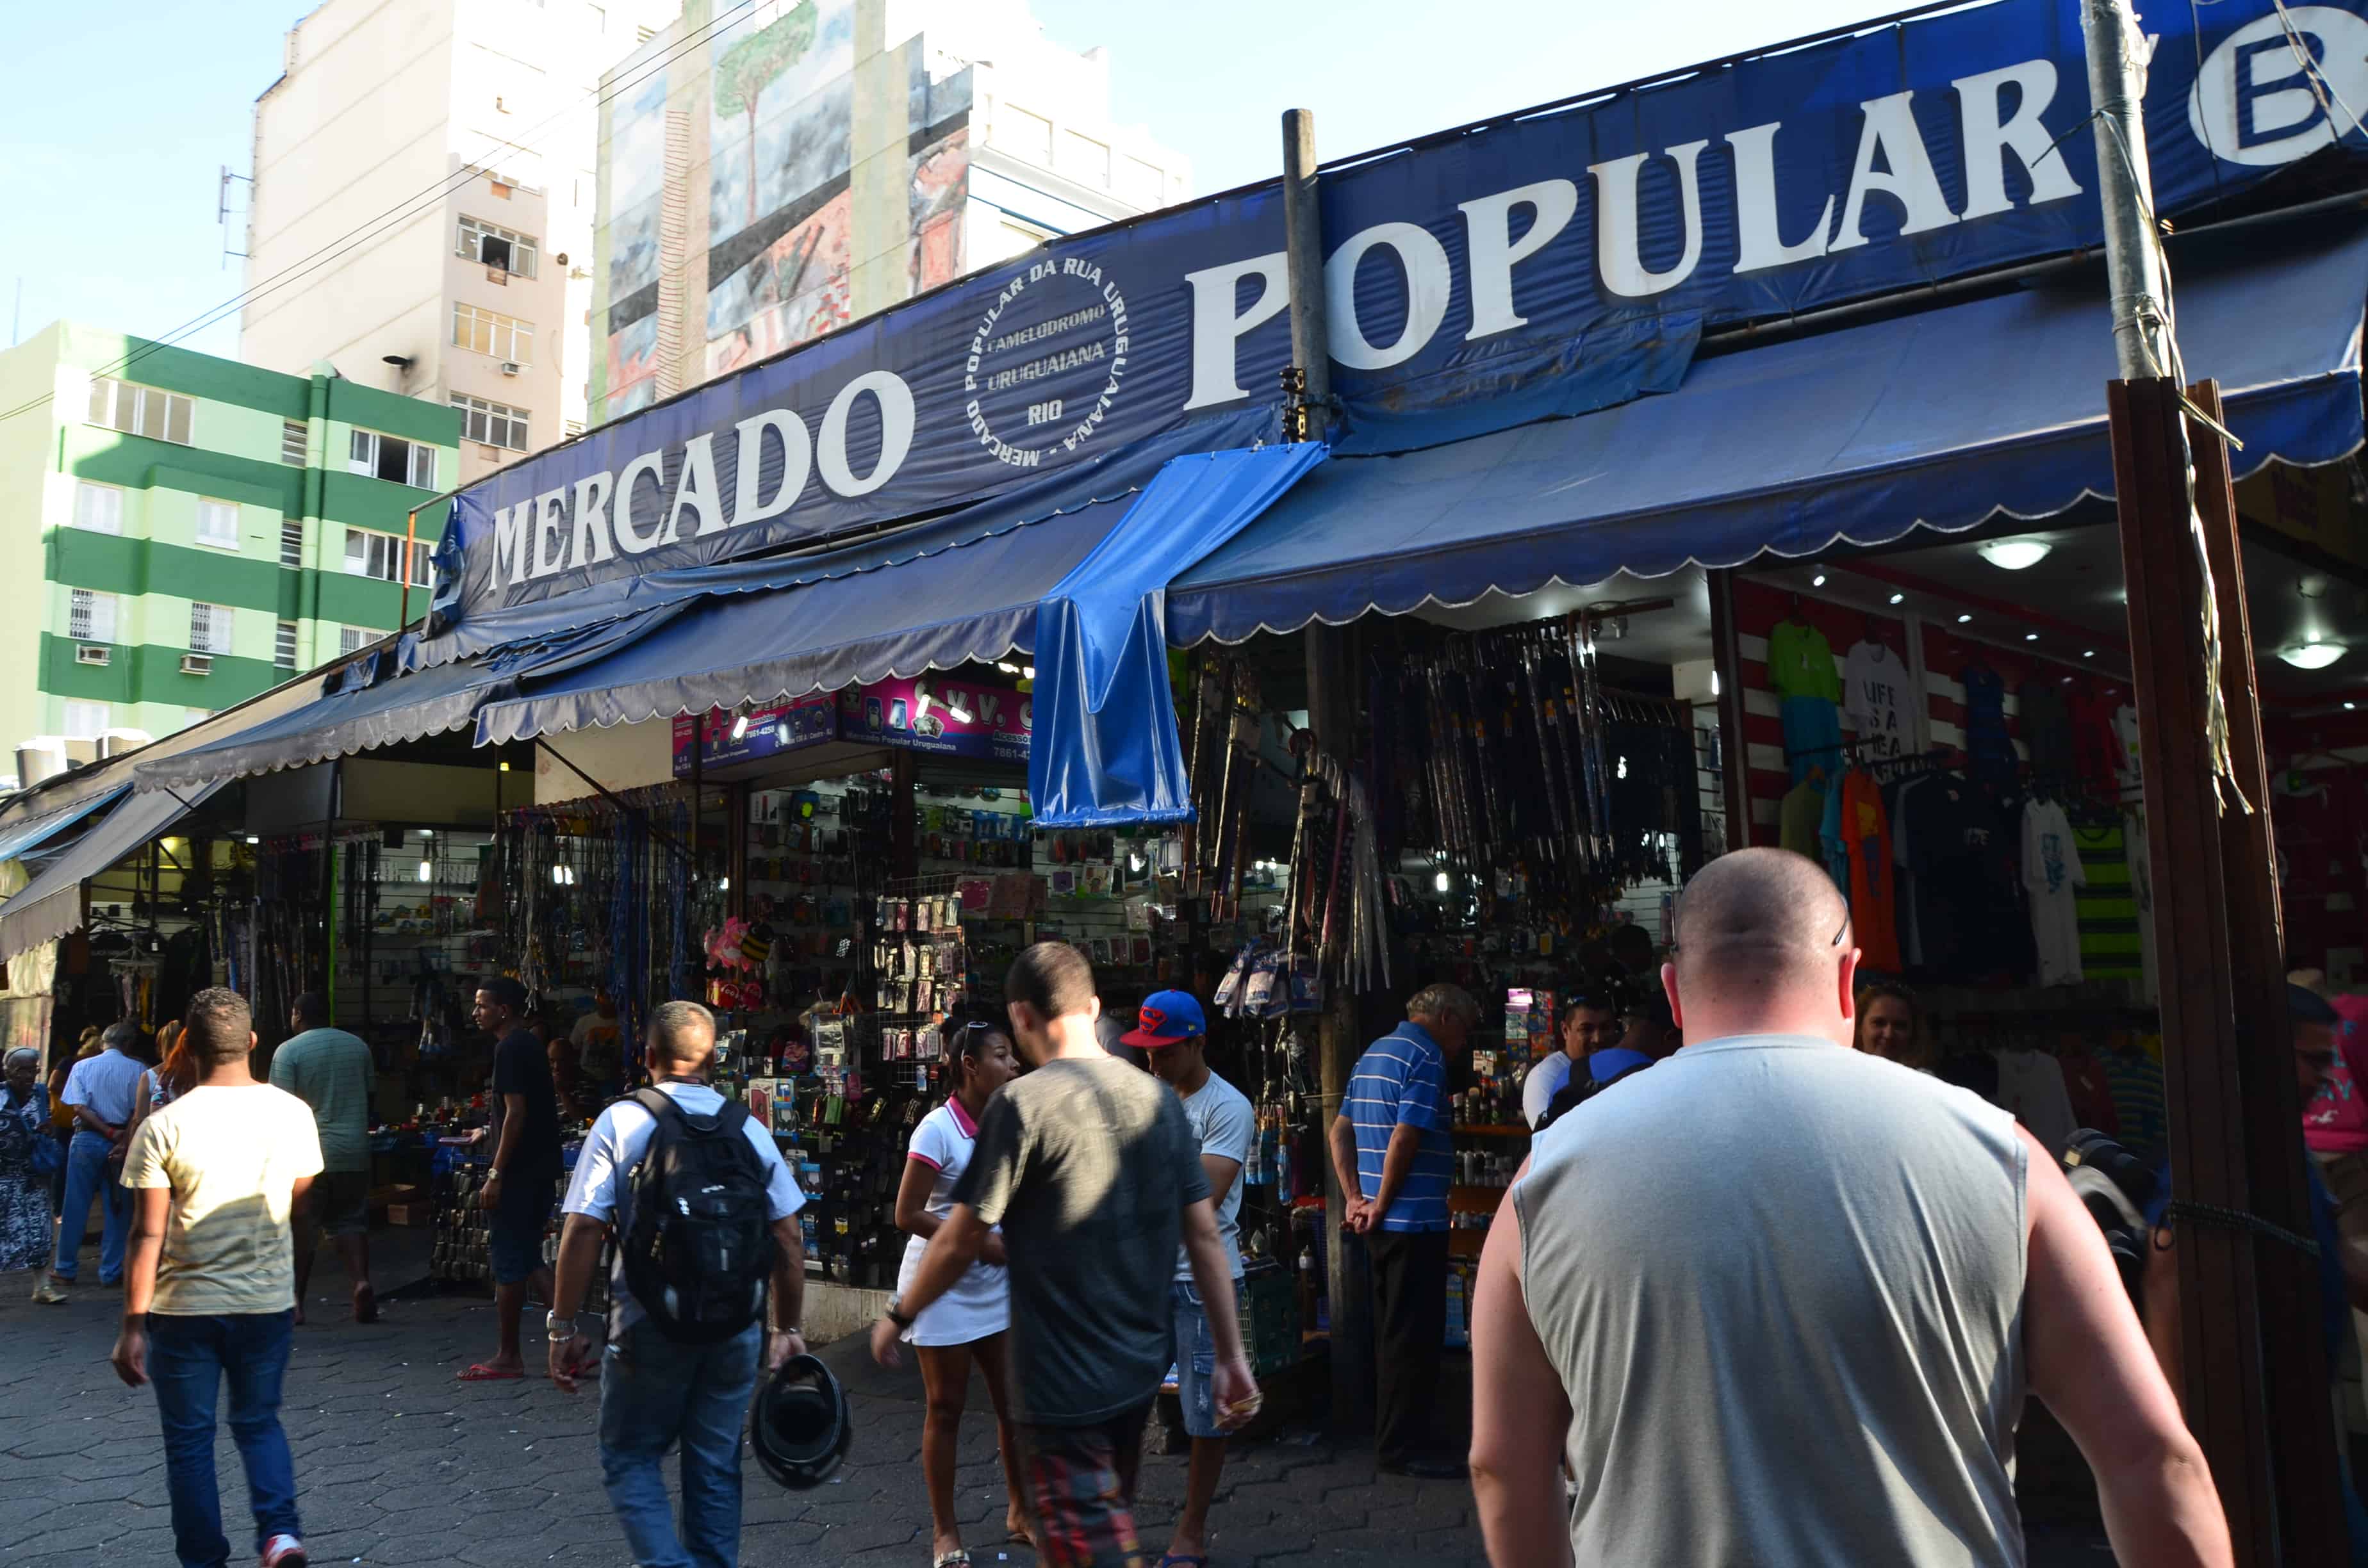 Mercado Popular in Rio de Janeiro, Brazil